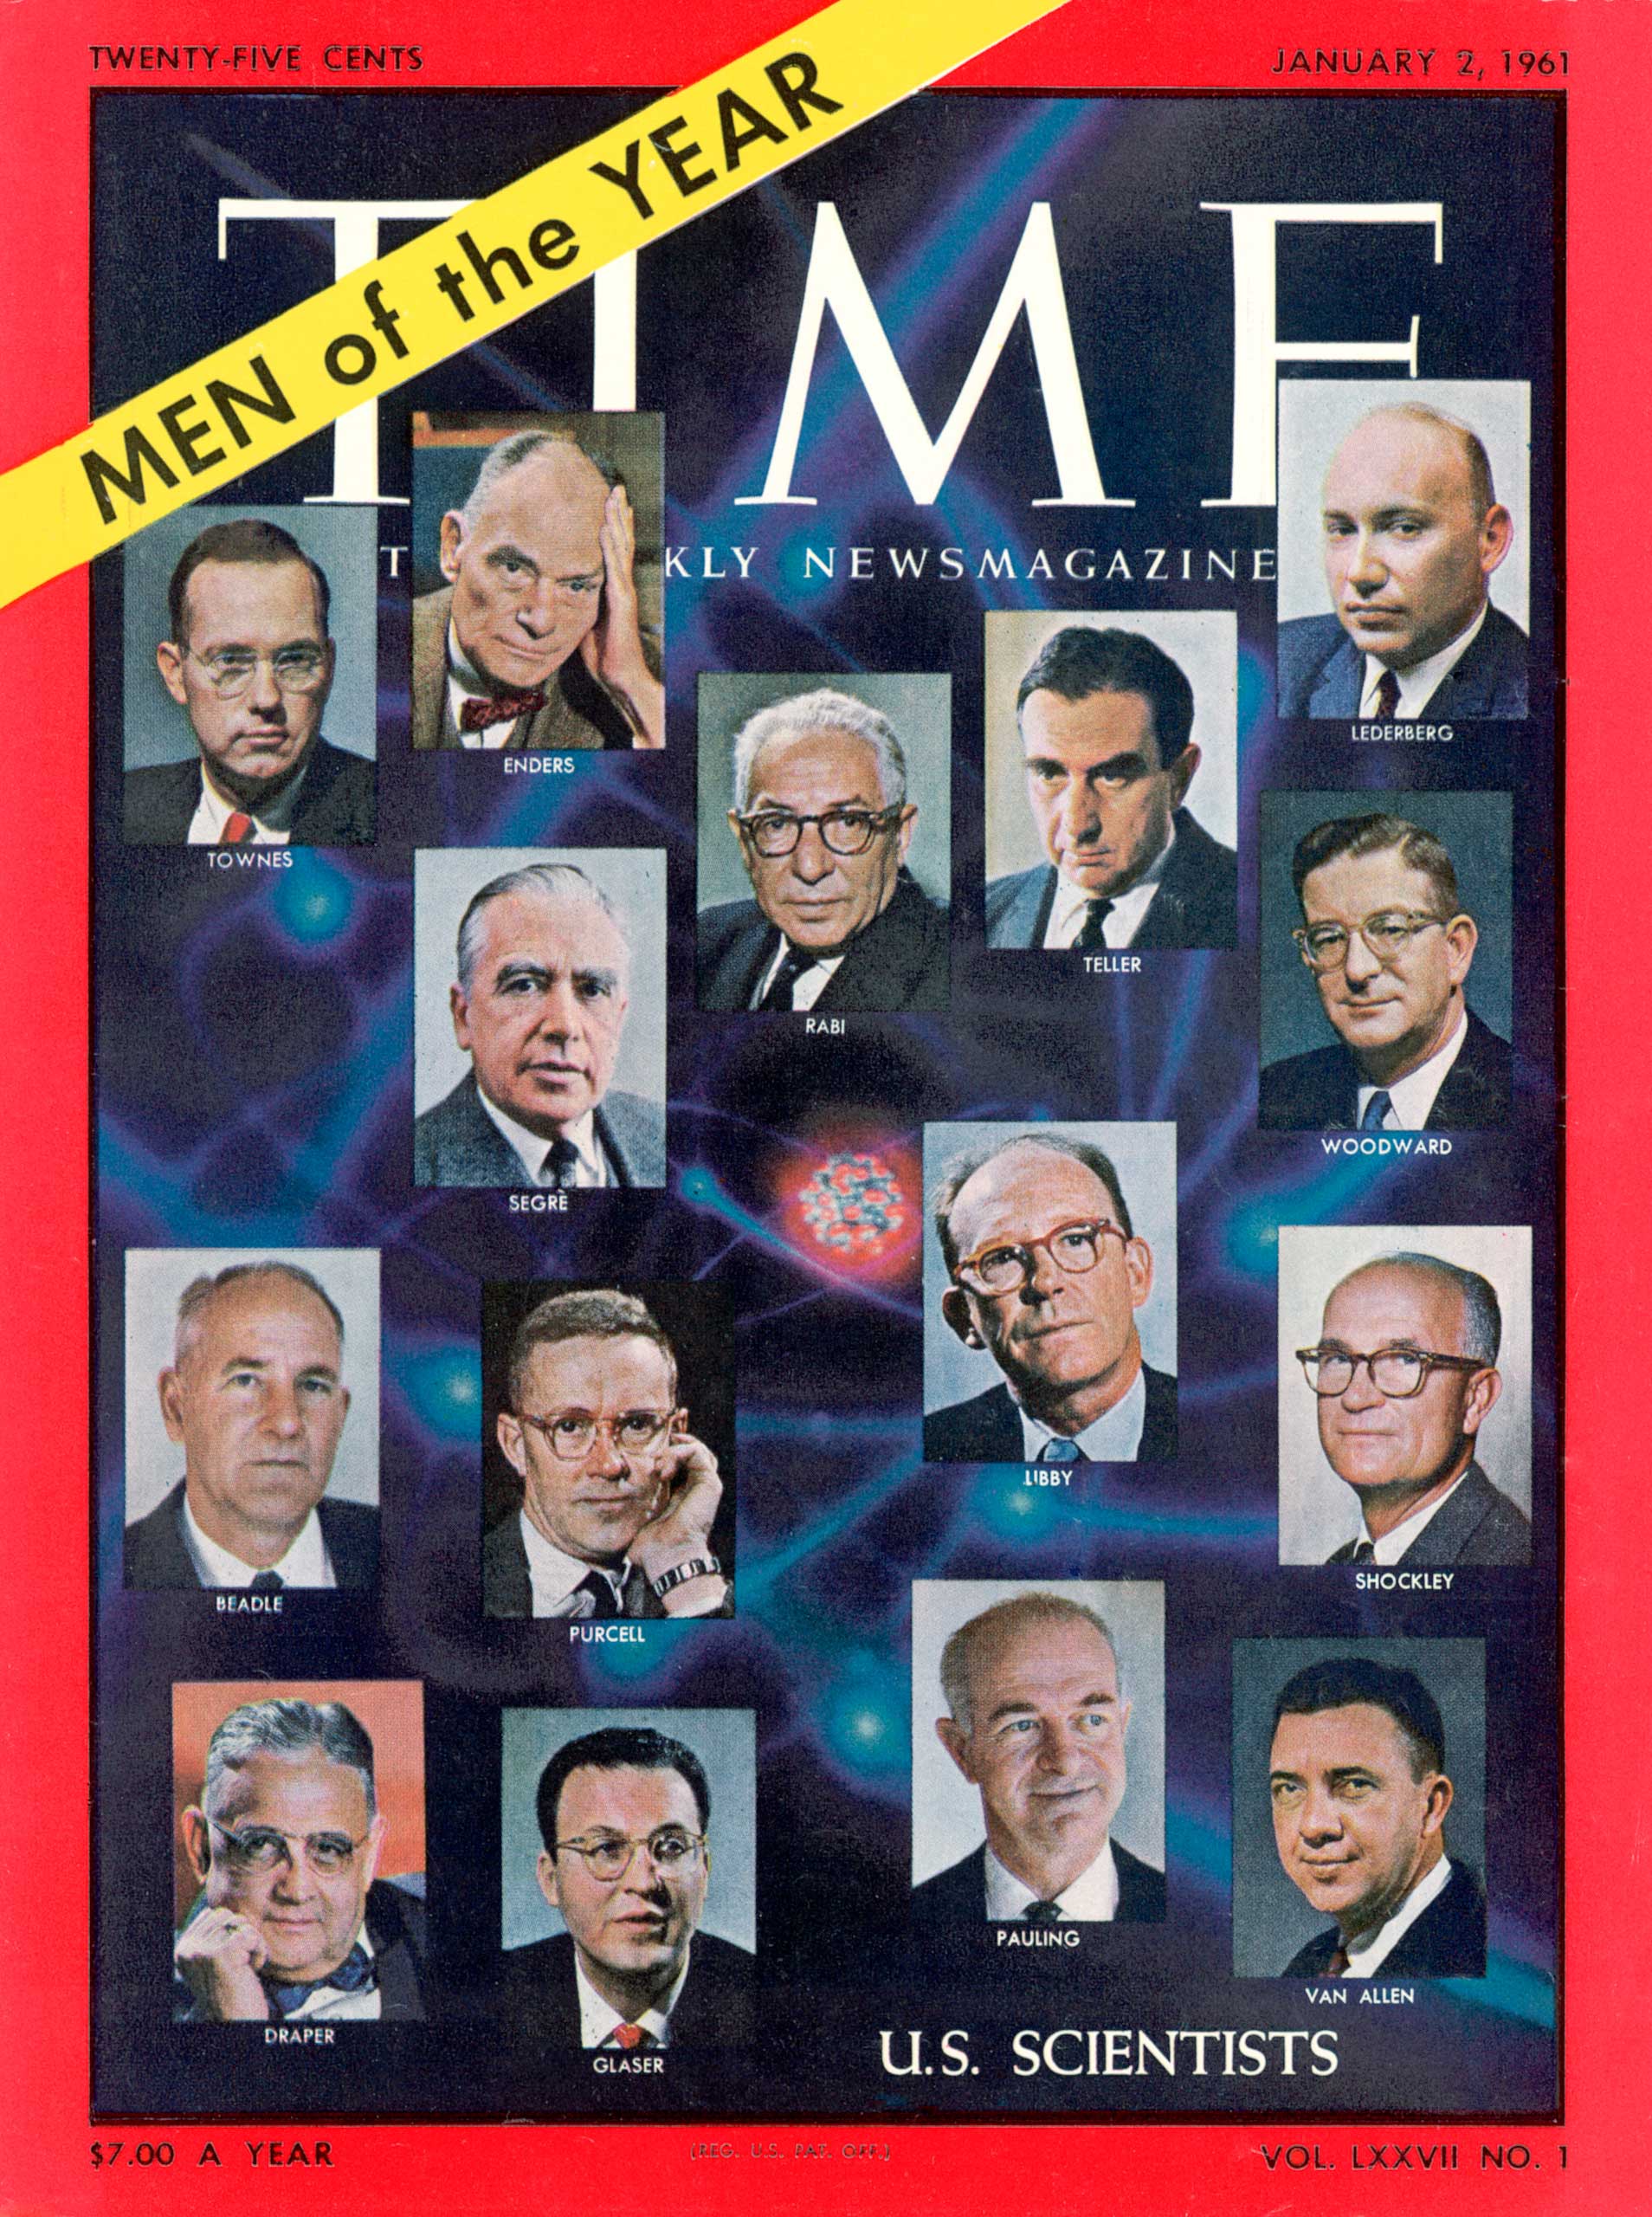 1960: U.S. Scientists